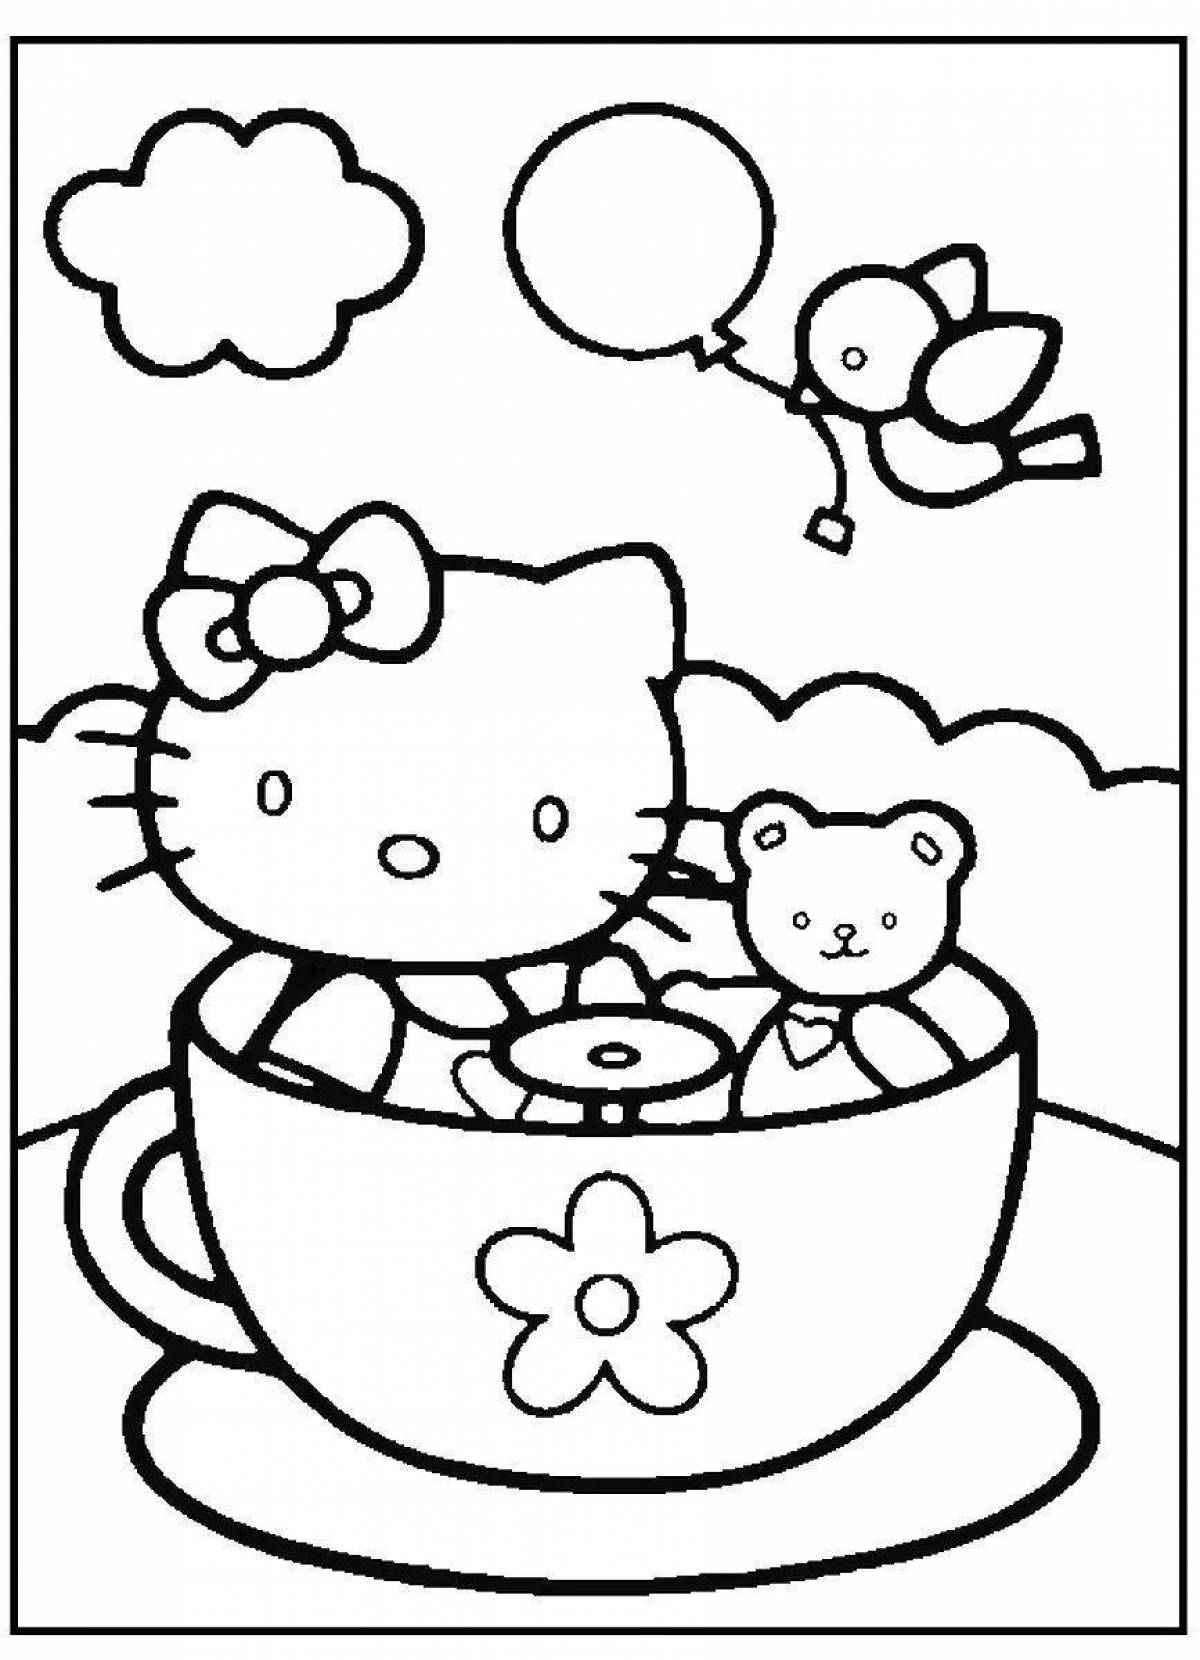 Kitten in a cup #6